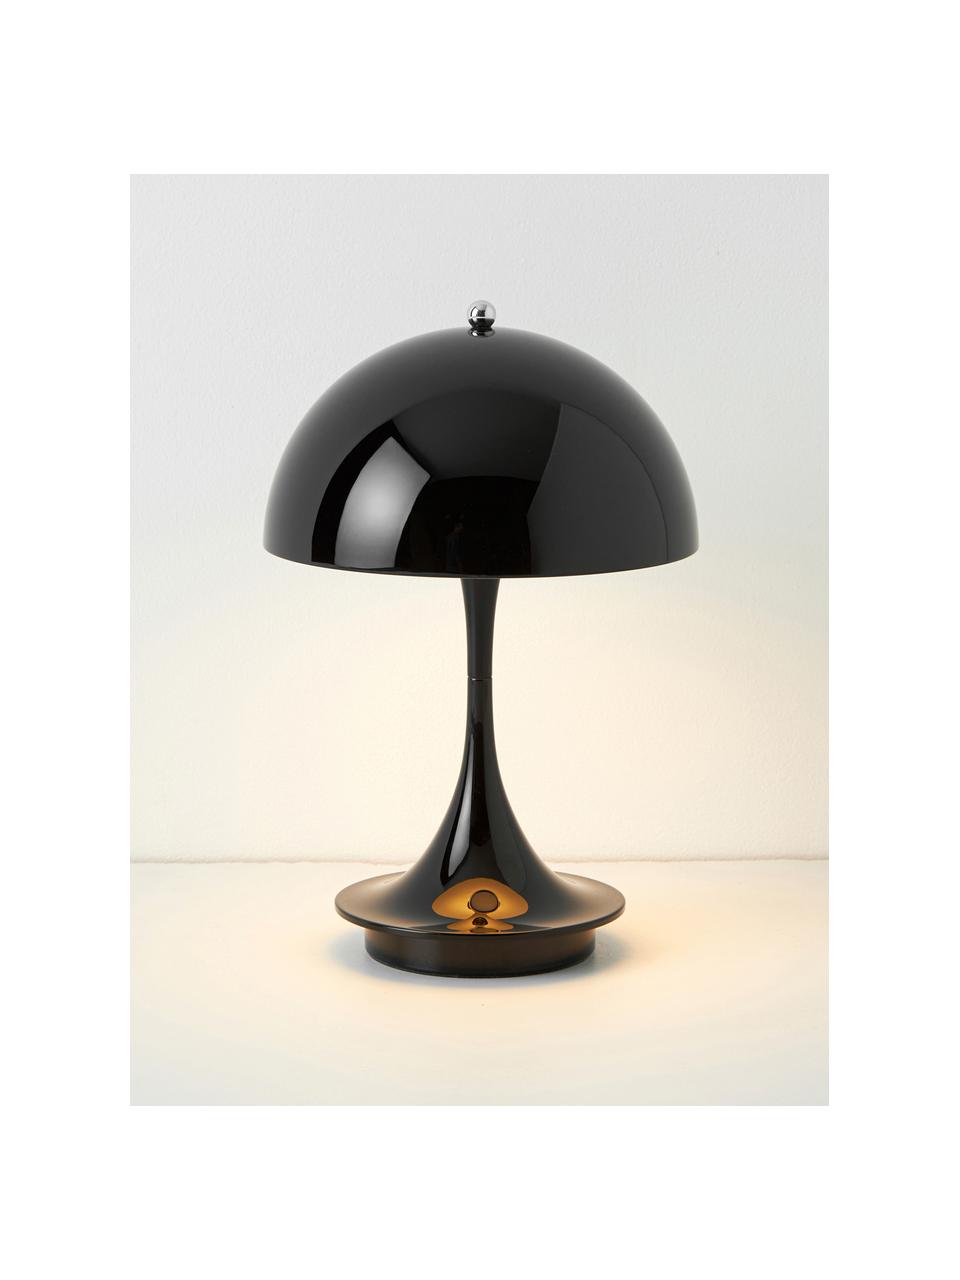 Mobilna lampa stołowa LED z funkcją przyciemniania Panthella, W 24 cm, Stelaż: aluminium powlekane, Czarna stal, Ø 16 x 24 cm